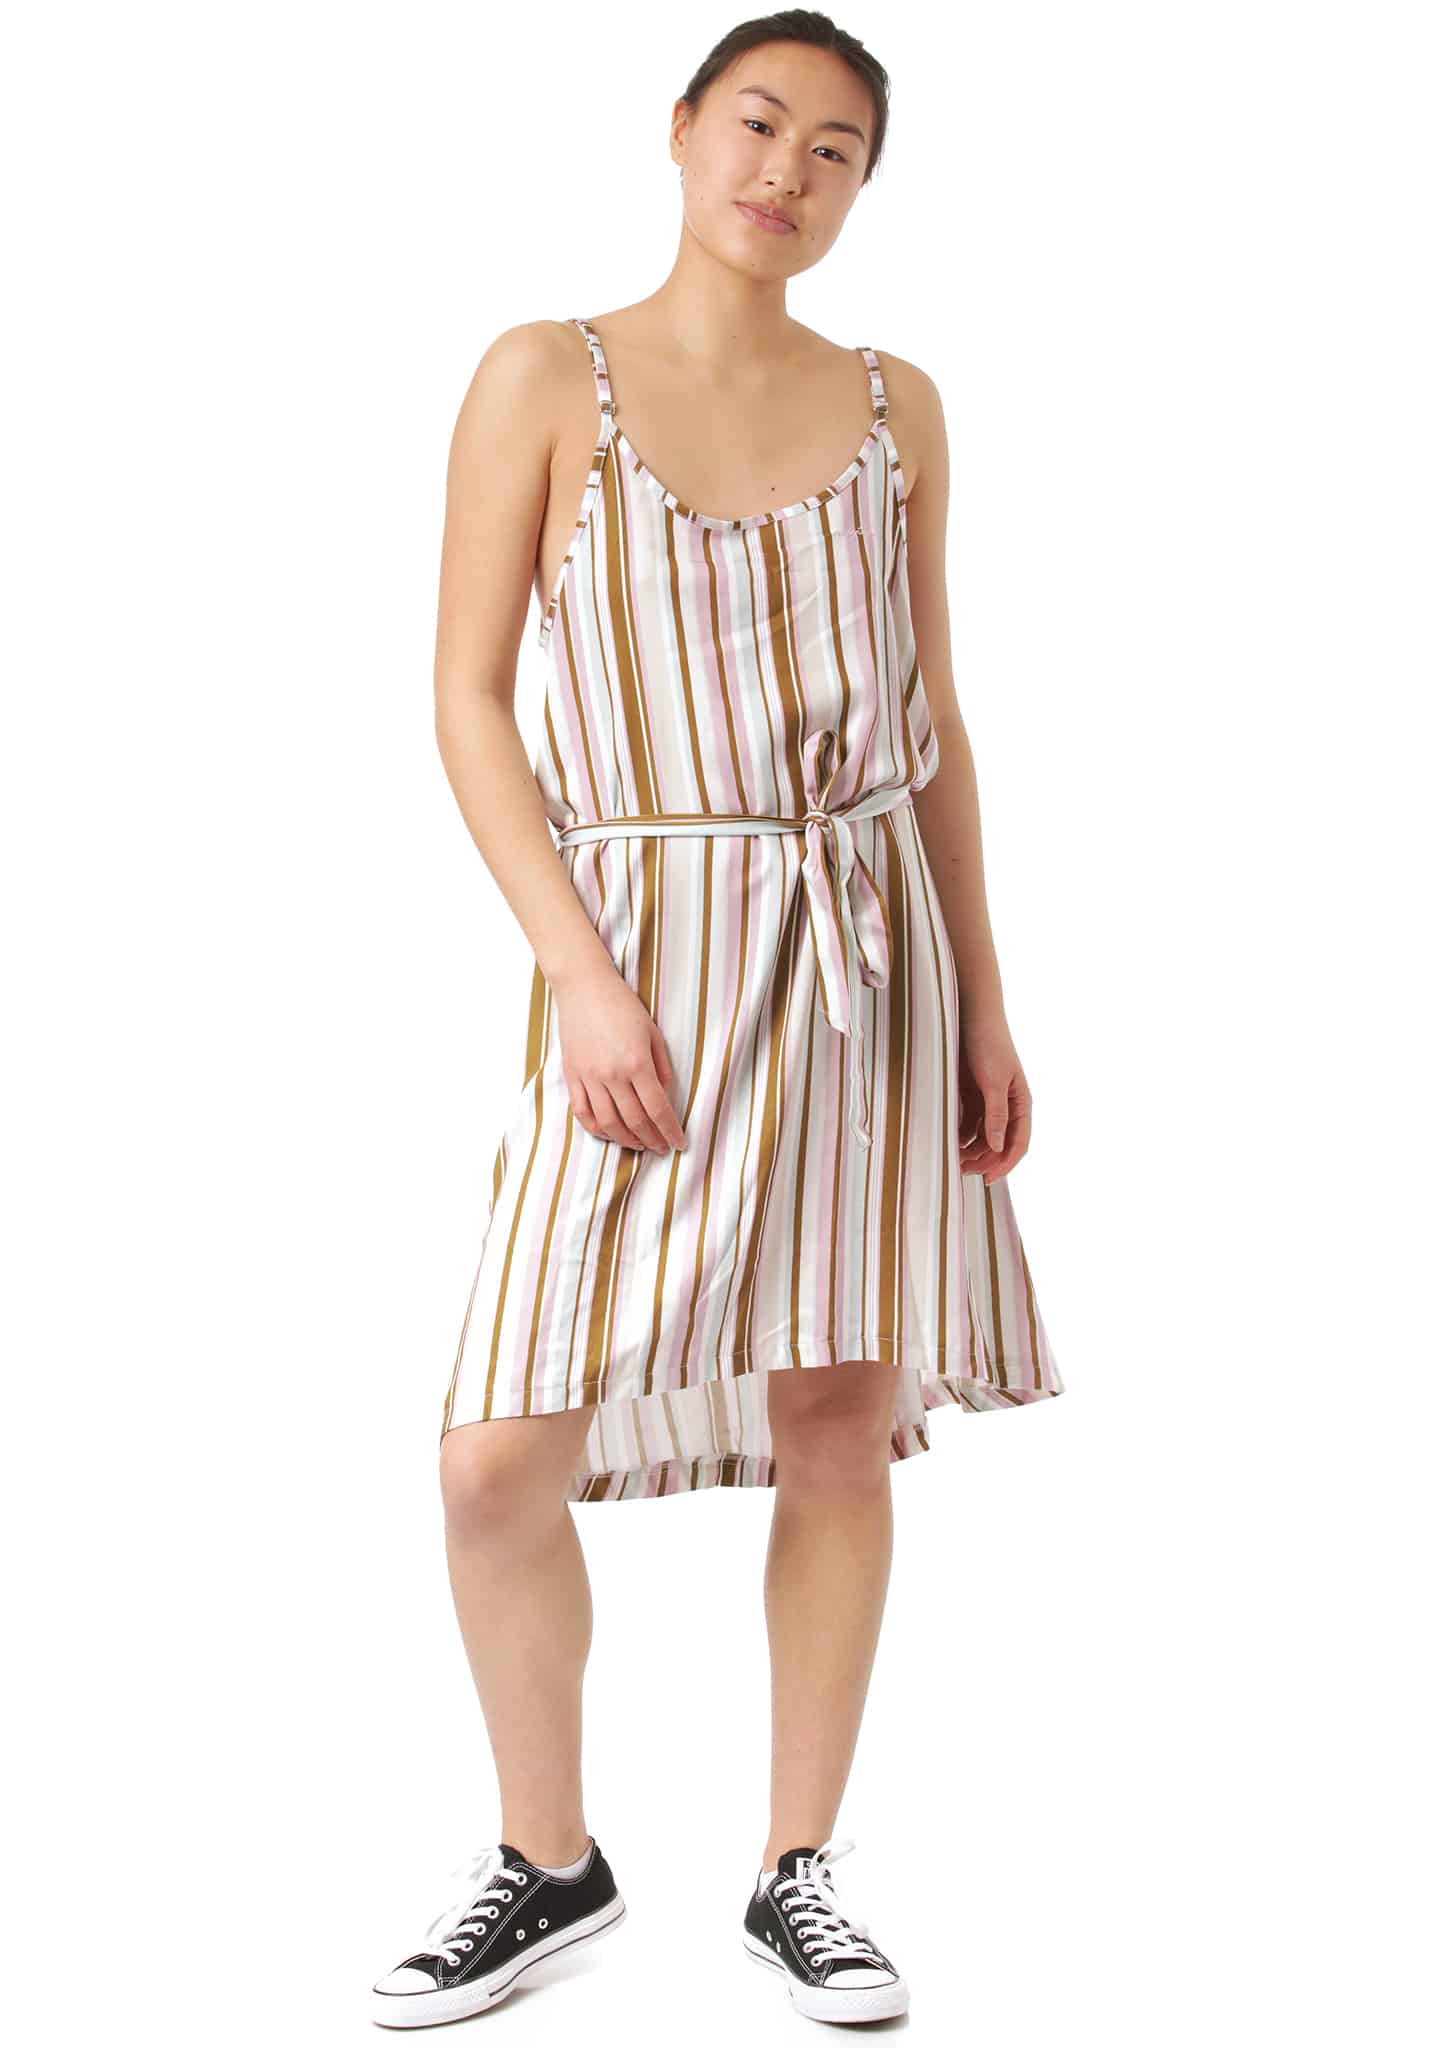 Mazine Pinetta Striped Kleid khaki / gestreift XL